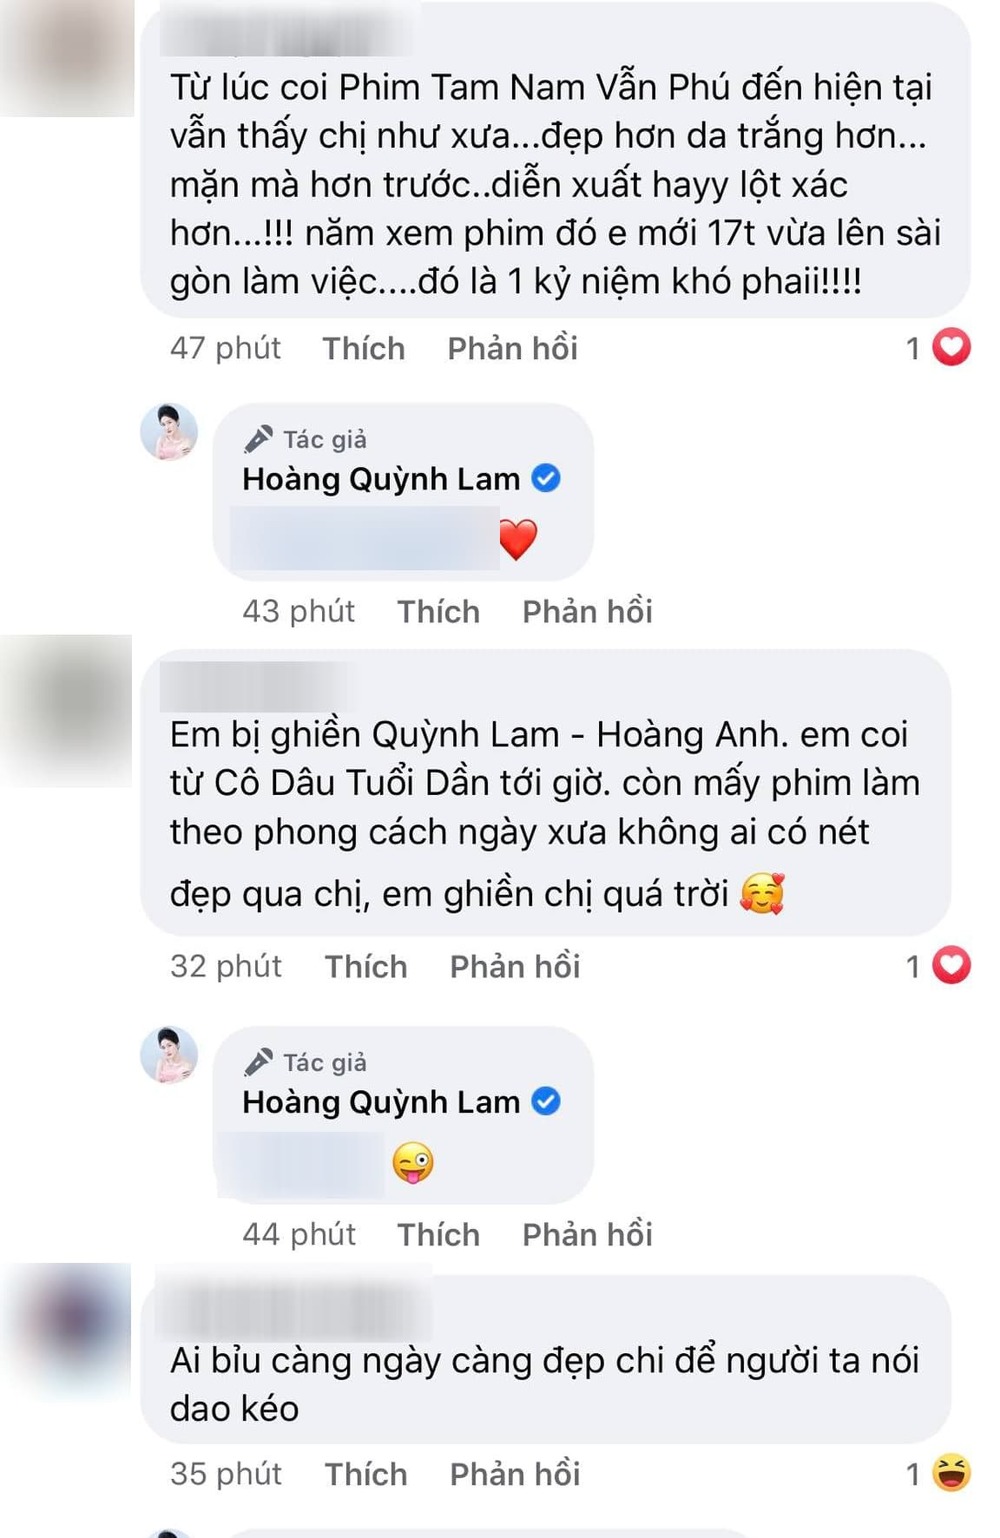  
Khán giả khen ngợi nhan sắc "lão hóa ngược" của Quỳnh Lam. (Ảnh: Chụp màn hình Facebook Hoàng Quỳnh Lam)